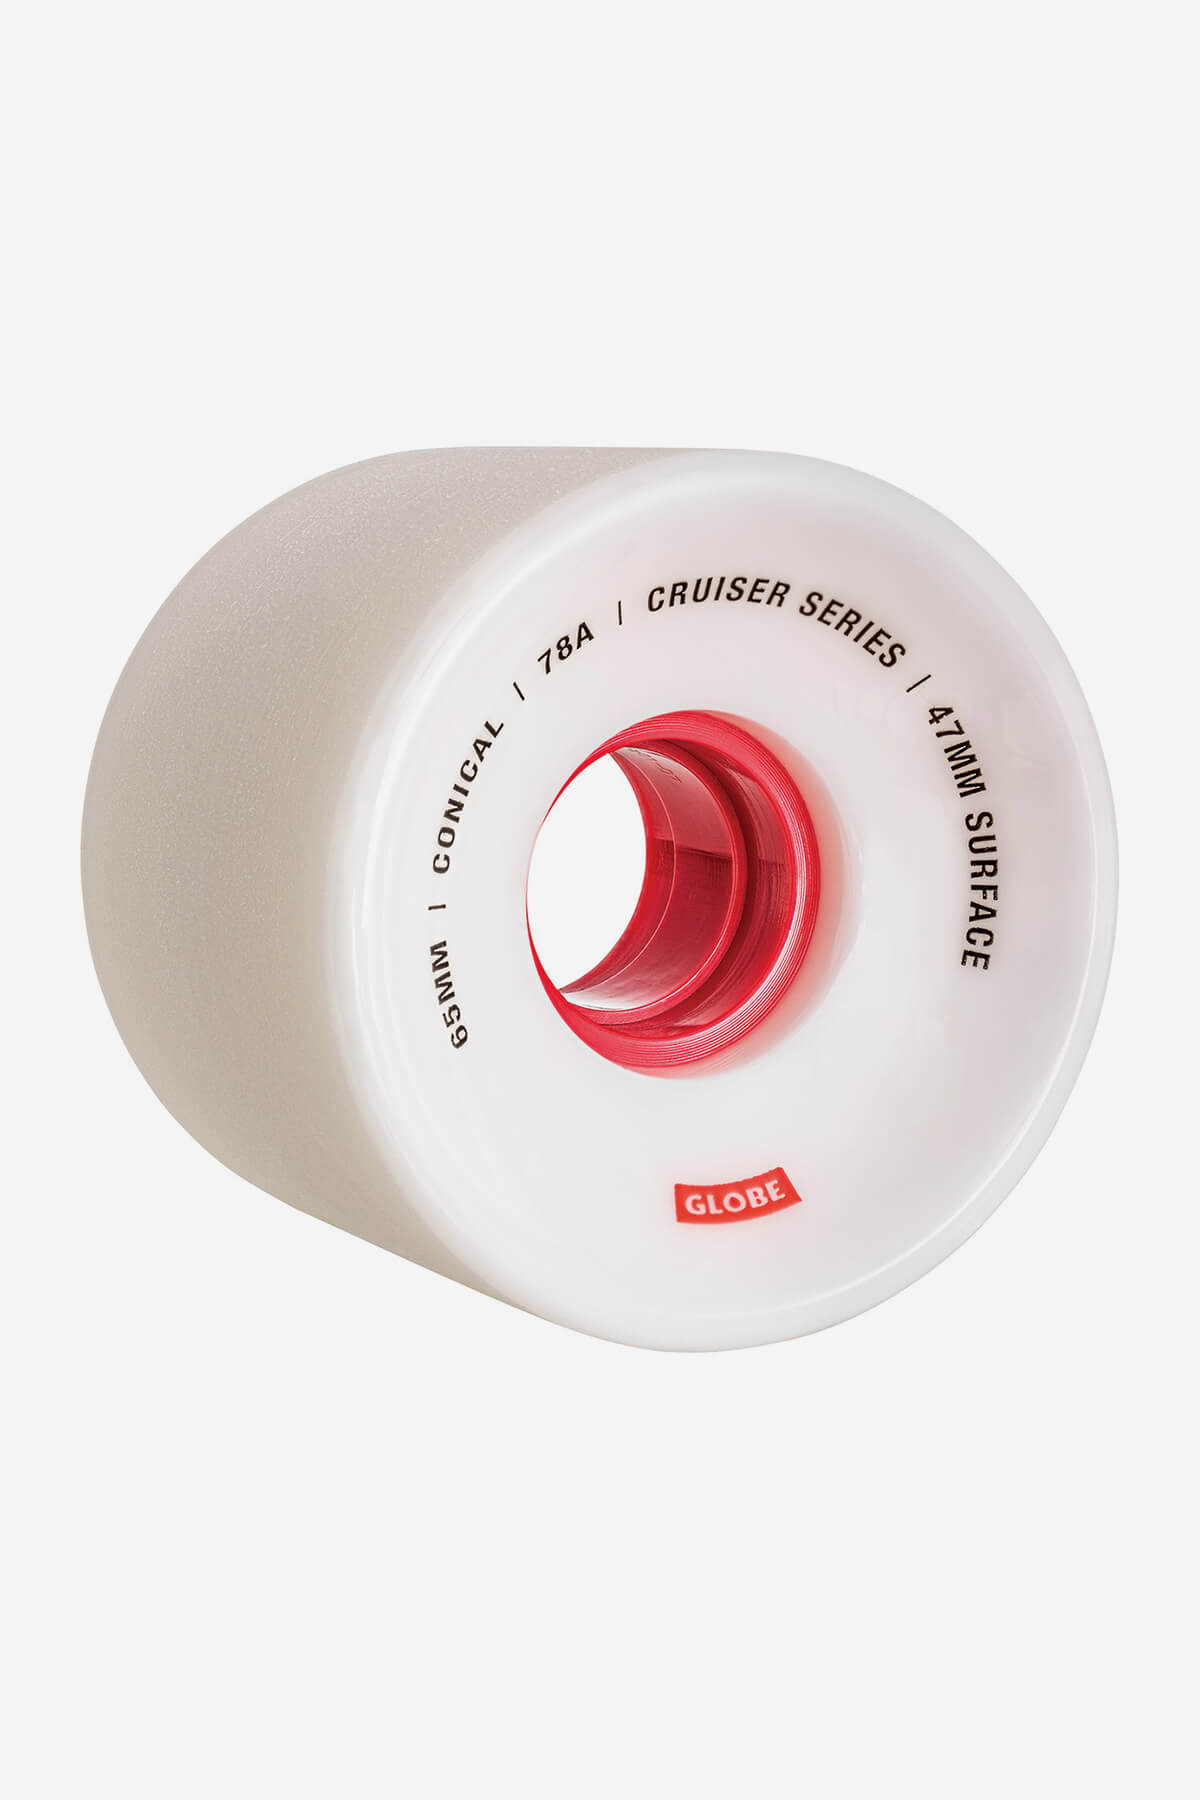 Globe - Conisch Cruiser Skateboard  Wheel  65Mm - White/Red